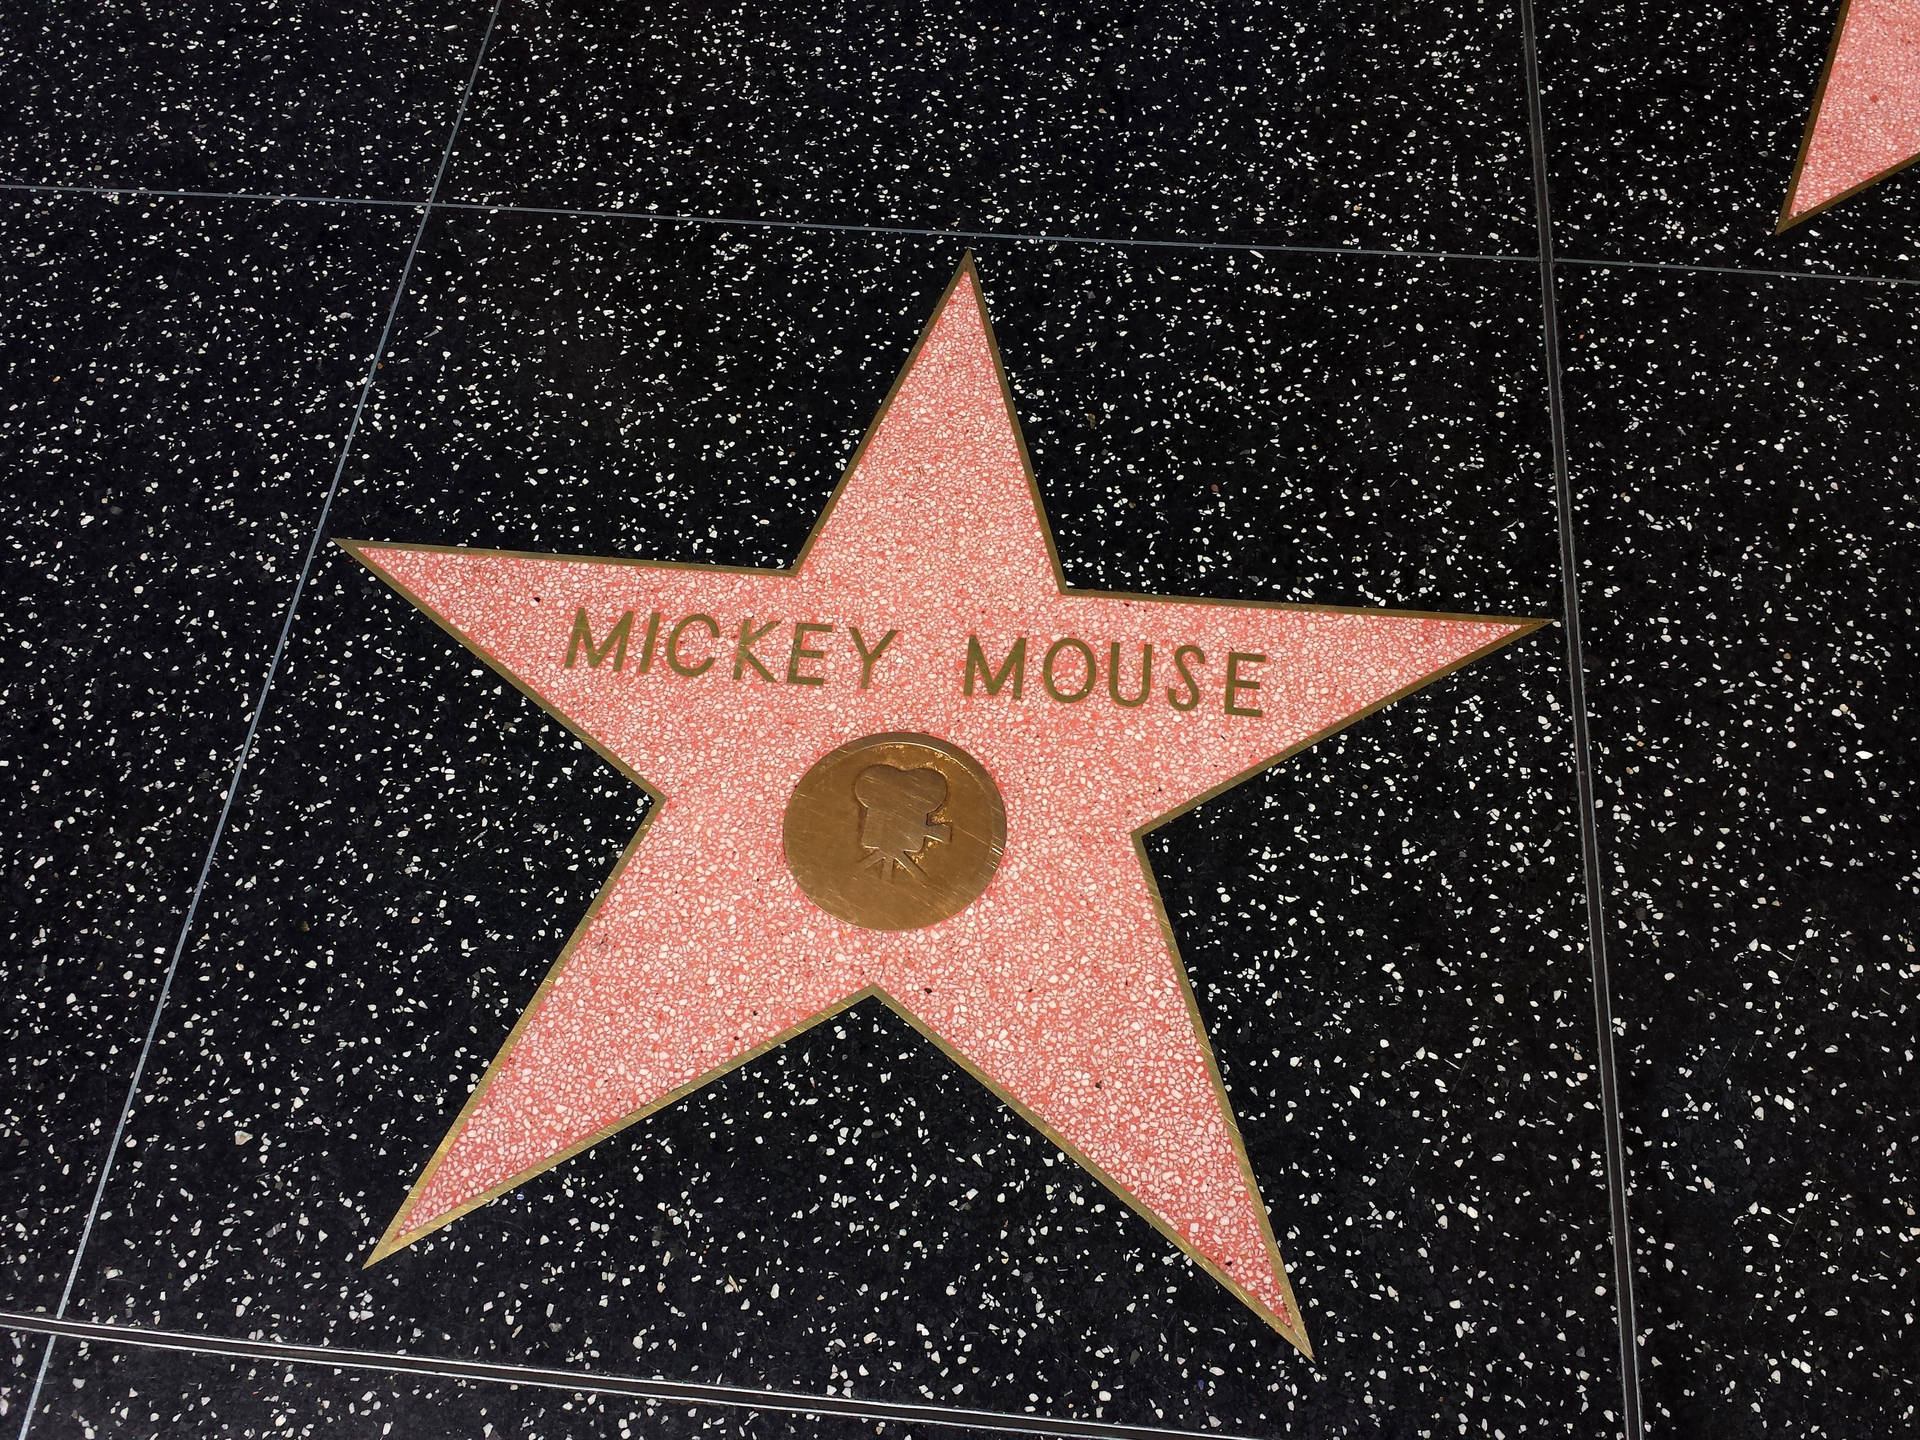 Mickeymouse En El Paseo De La Fama De Hollywood. Fondo de pantalla